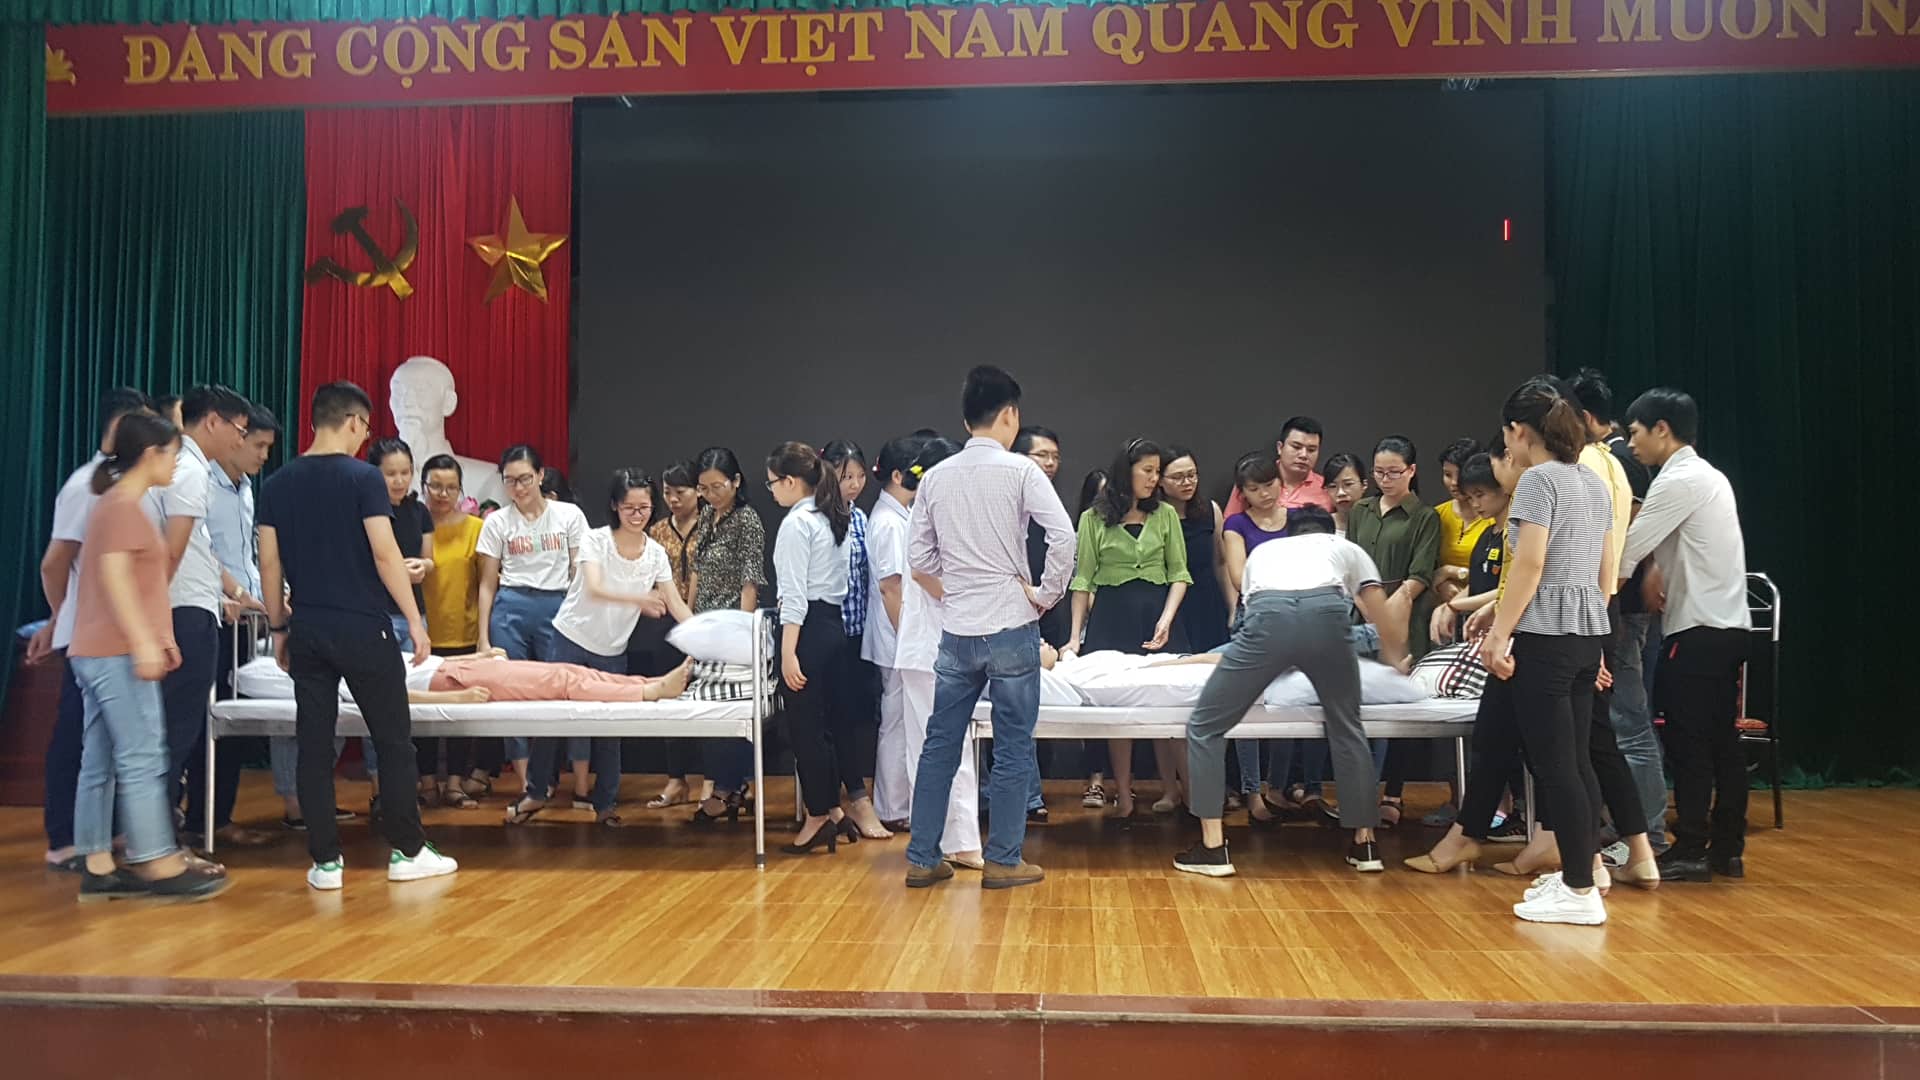 Khoá A1-41 - Bệnh viện Đa khoa Thanh Hóa (từ 28 - 31/5/2019)